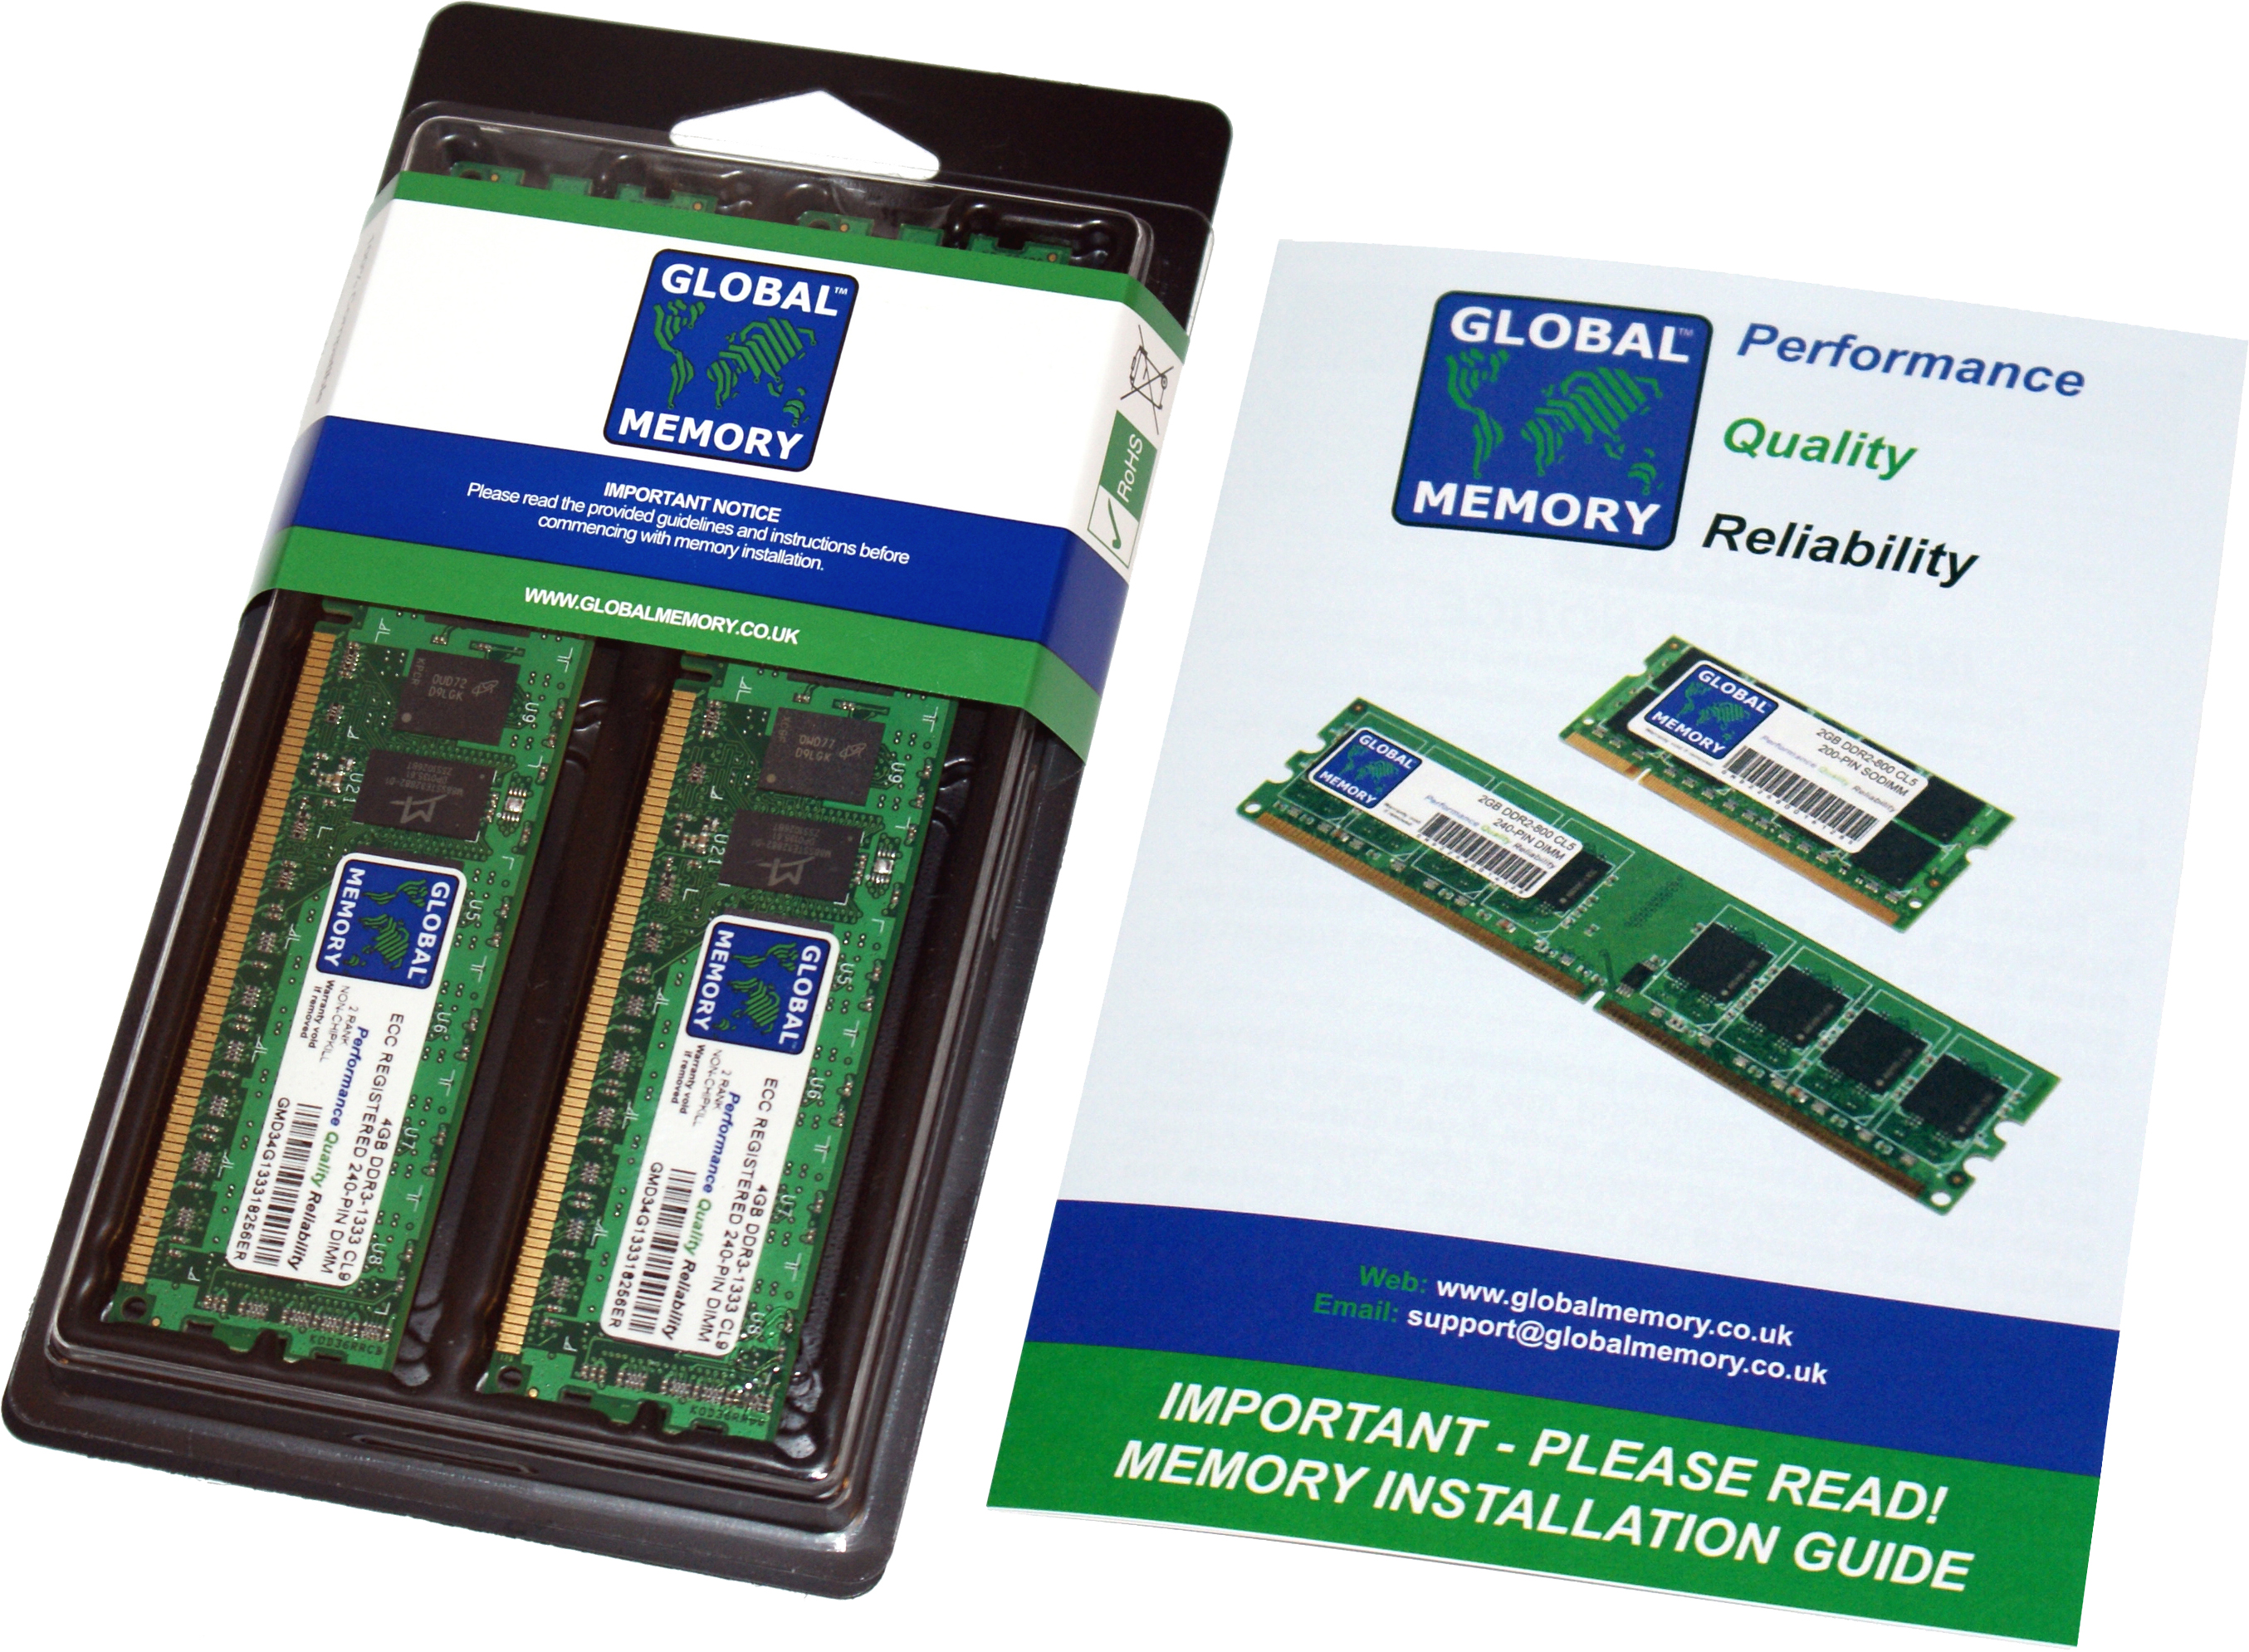 32GB (4 x 8GB) DDR4 3200MHz PC4-25600 288-PIN ECC REGISTERED DIMM (RDIMM) MEMORY RAM KIT FOR HEWLETT-PACKARD SERVERS/WORKSTATIONS (4 RANK KIT CHIPKILL)